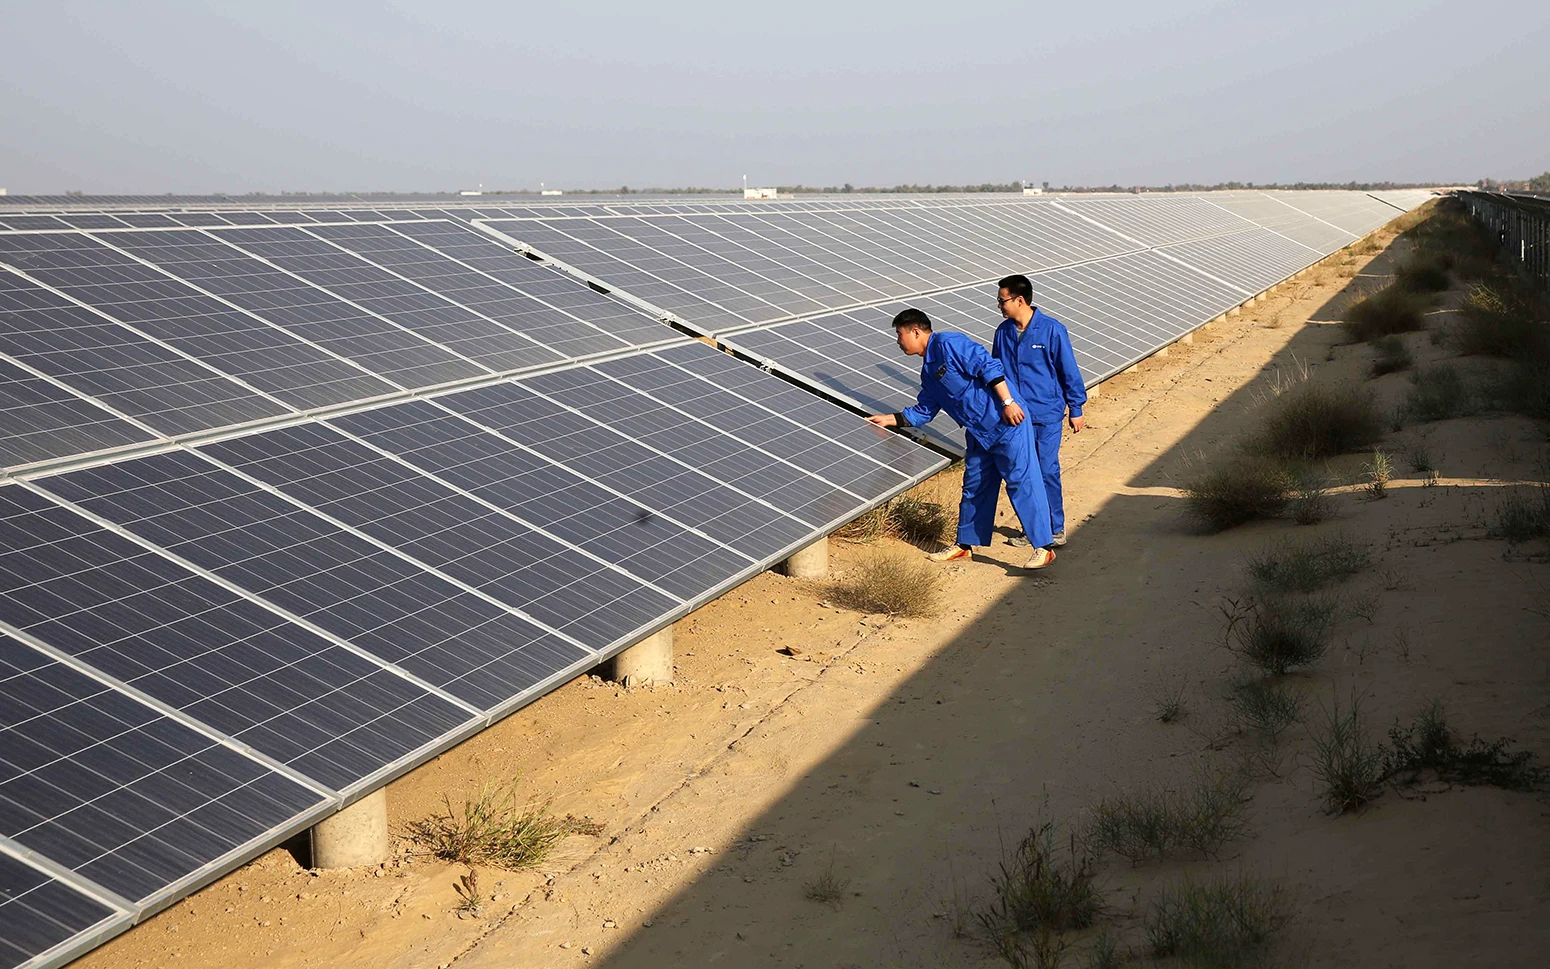 Технические специалисты проверяют солнечные панели в Бахавалпуре, Пакистан.